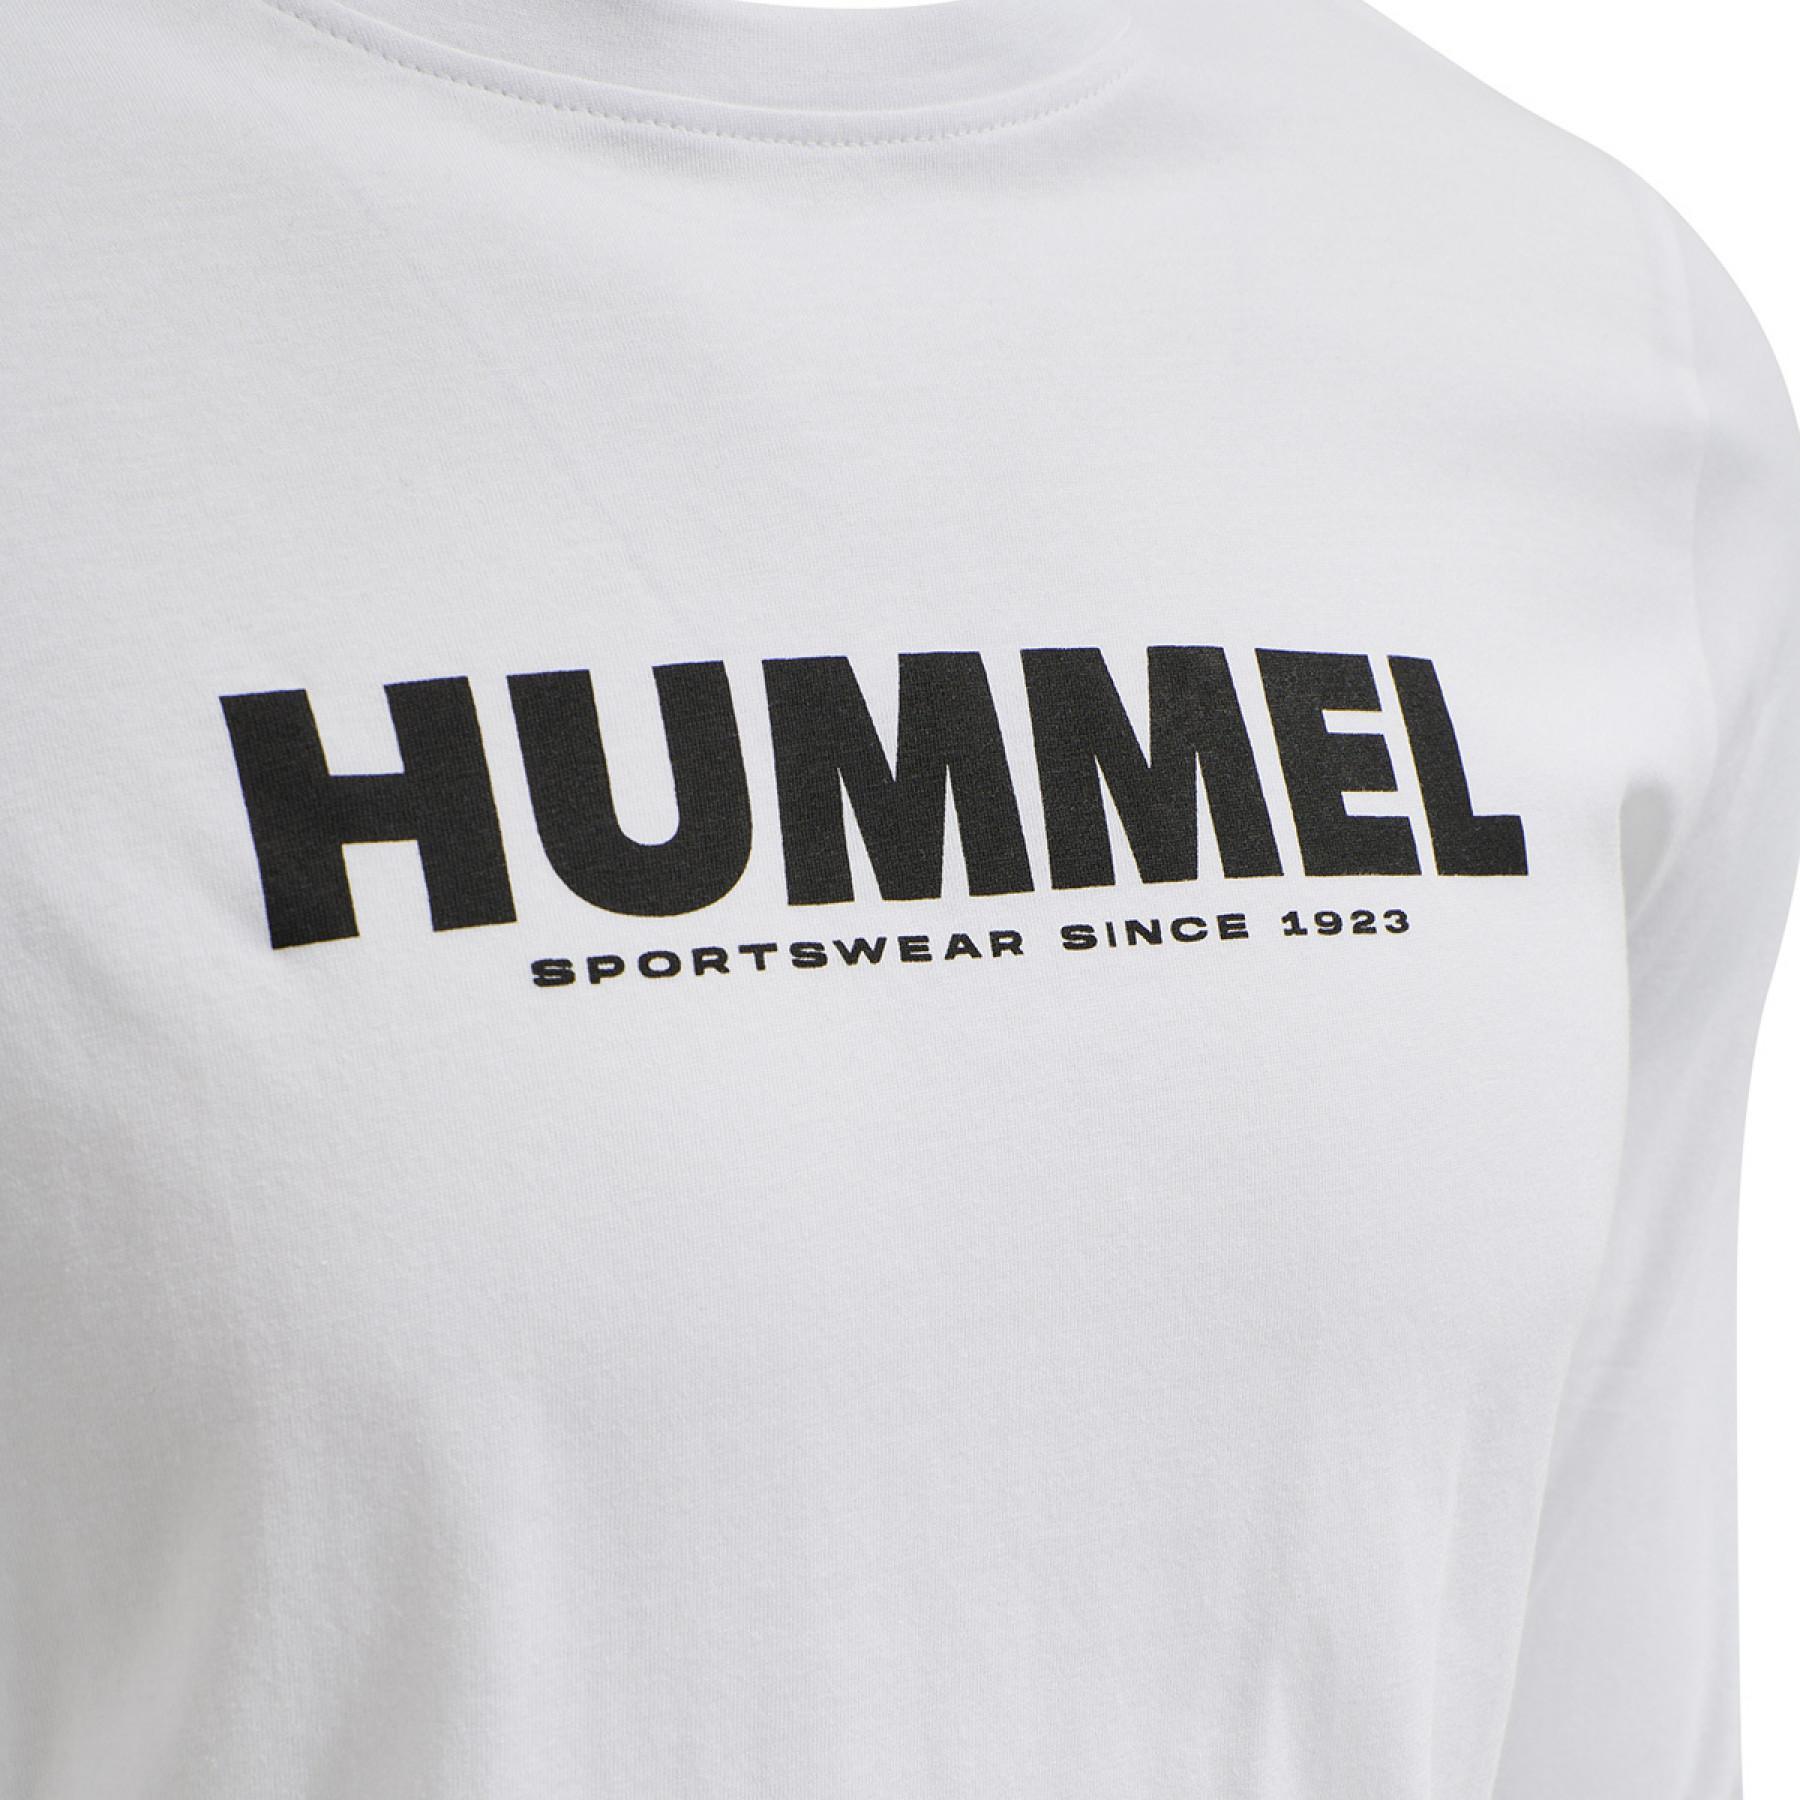 Camiseta mangas largas Hummel hmlLEGACY